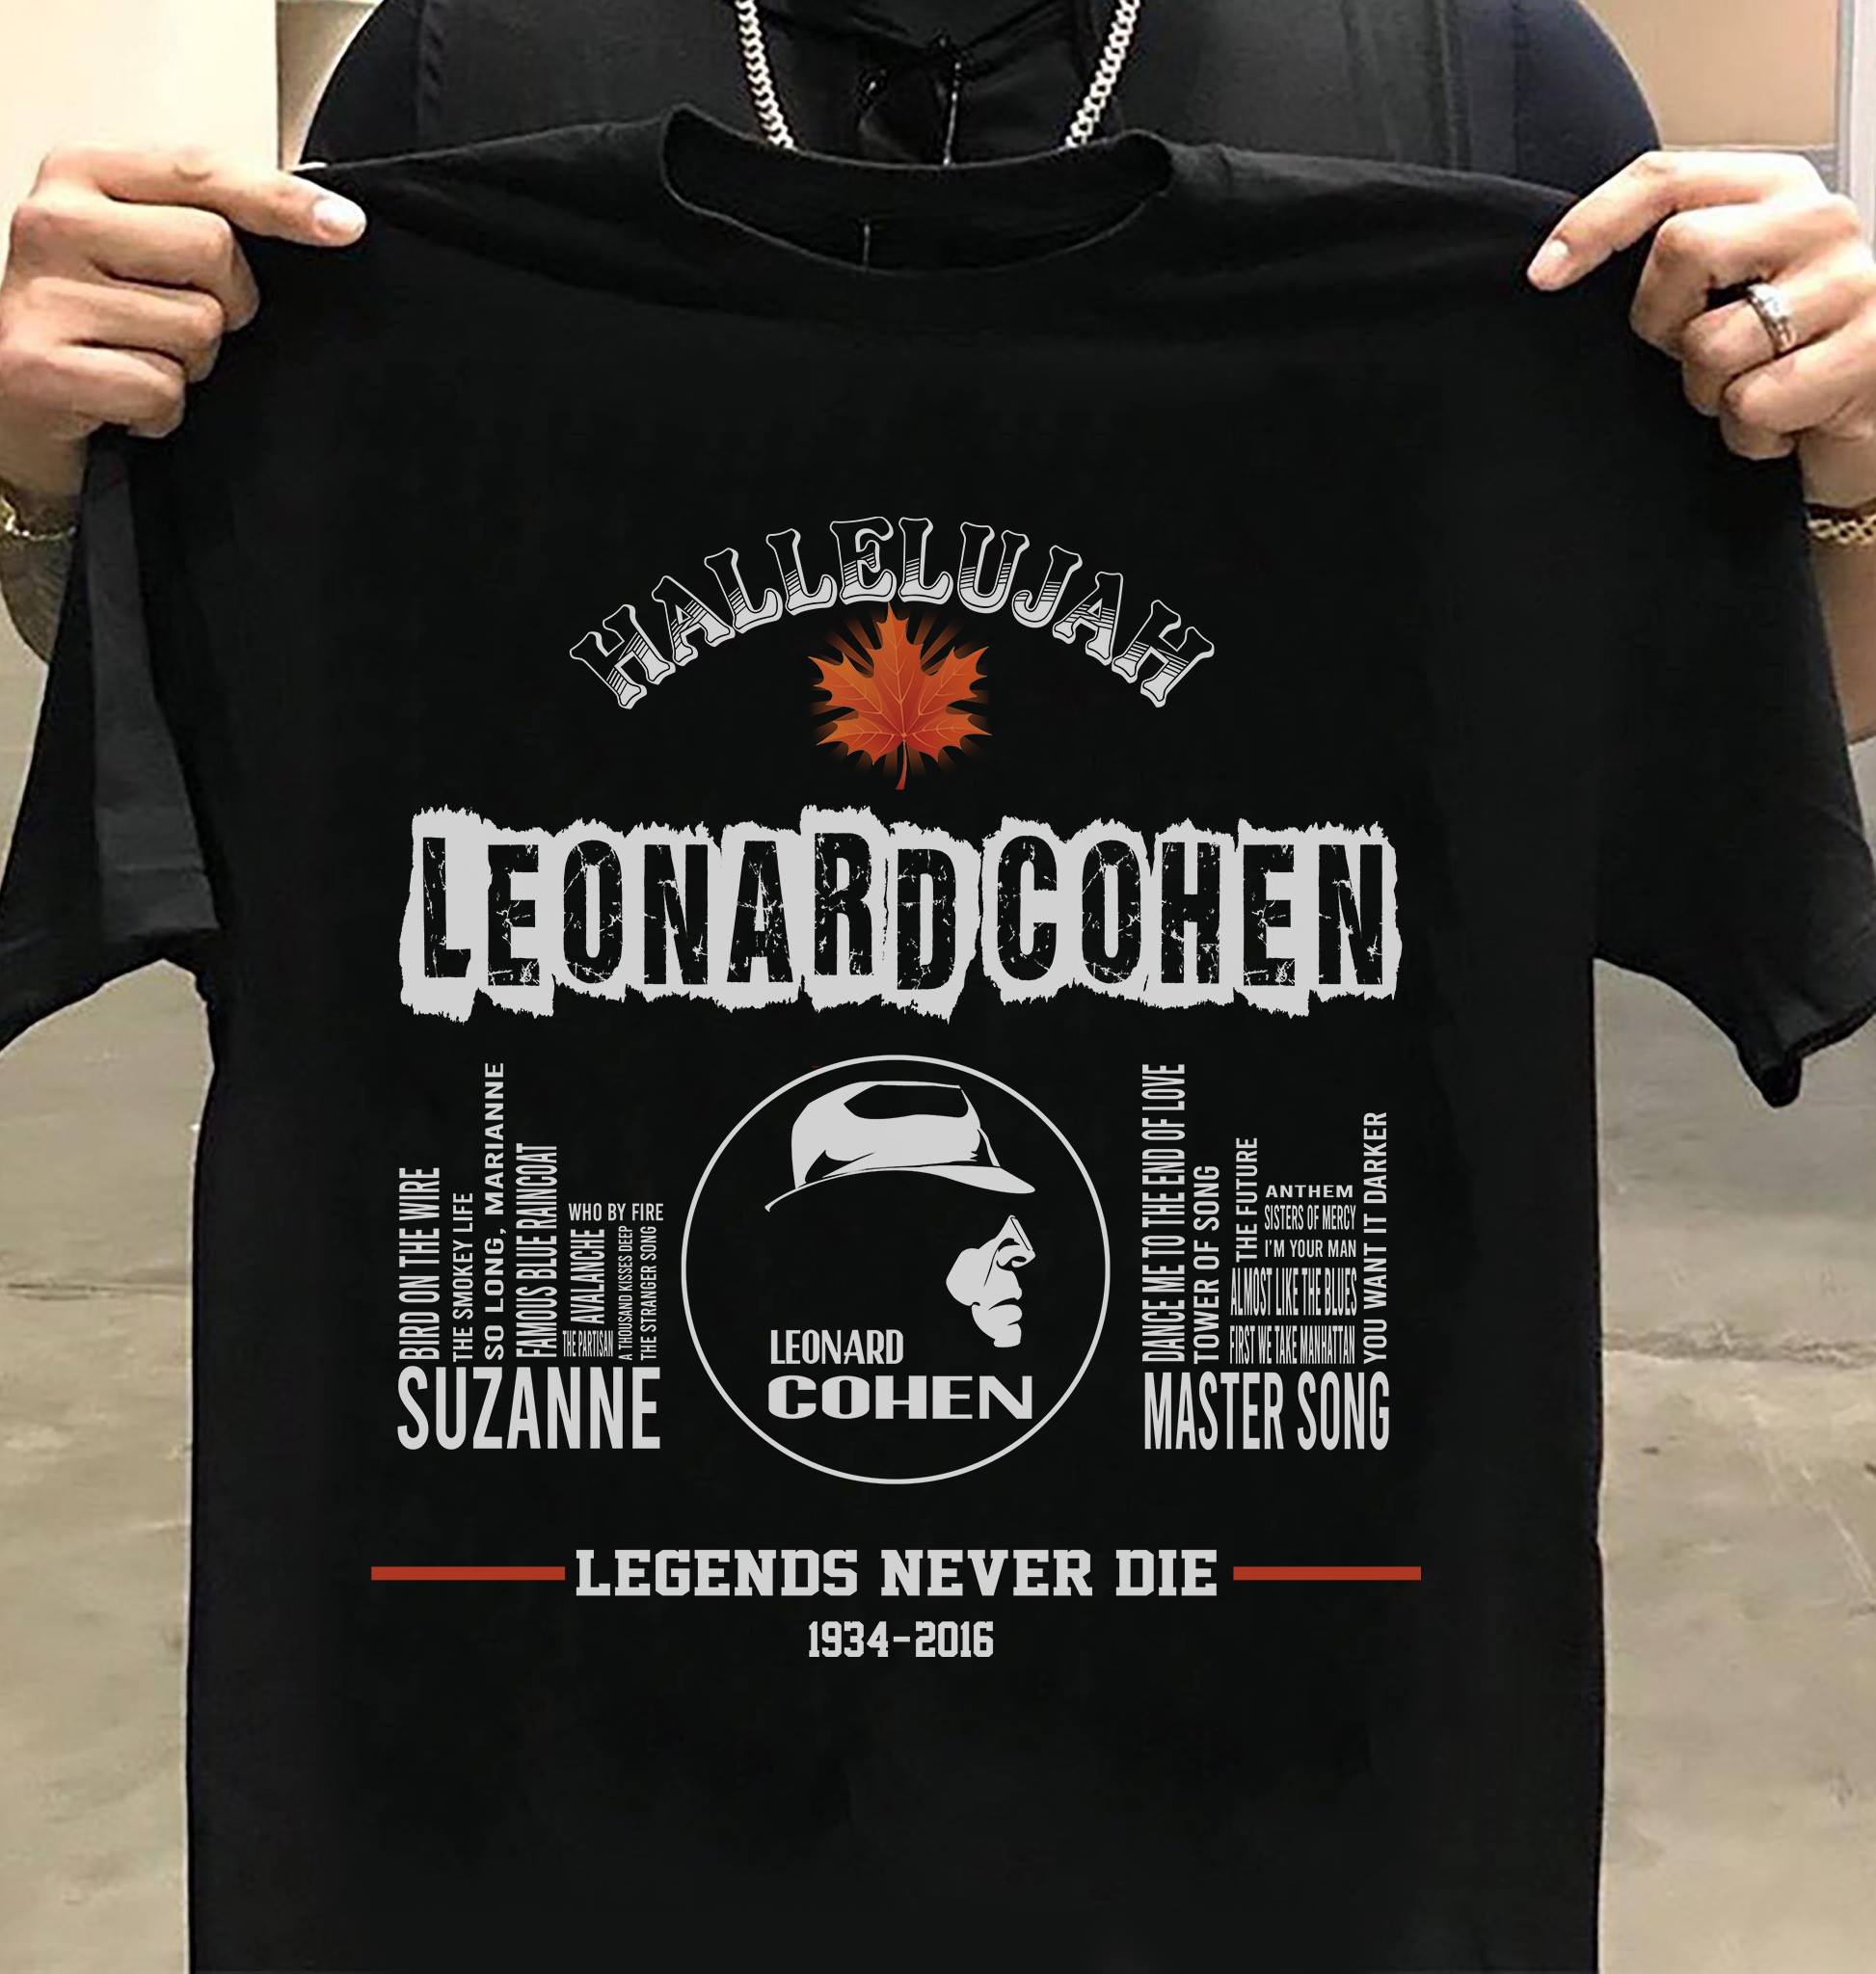 Hallelujah Leonardcohen - Legends never die 1934 - 2016